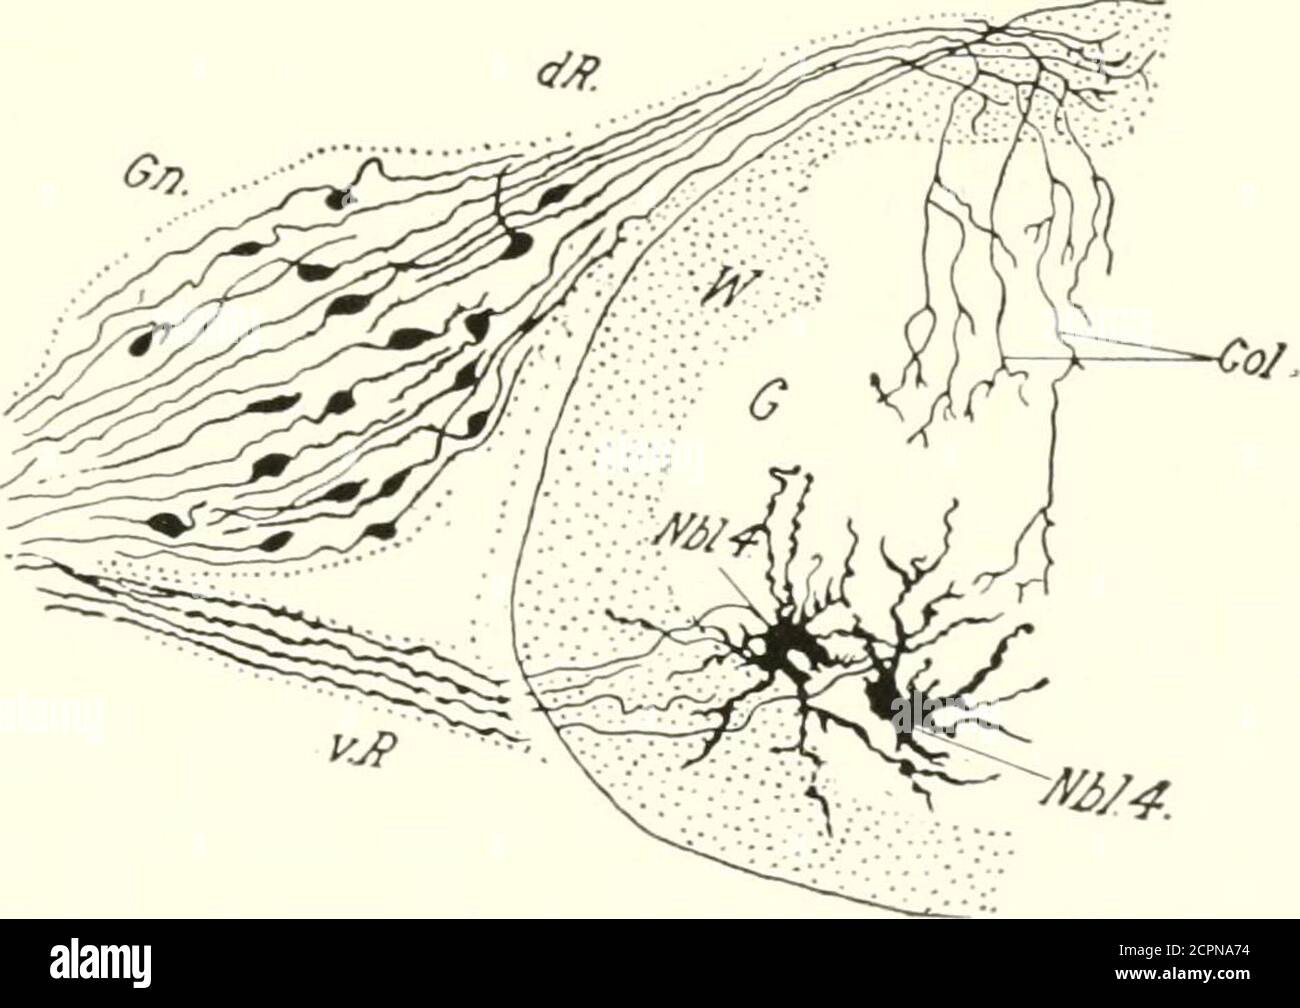 . El desarrollo del polluelo; una introducción a la embriología. NHL. 4, Neurobhist de tiie ventral cuerno (motor). EL SISTEMA NERVIOSO 237 la raíz dorsal y del sistema simpático. El primer parently se considera aquí, y se llaman generalmente los neuroblastos gán-gliónicos s.s., ]:)porque ellos solos permanecen en el spinalganglia. Al igual que los neuroblastos medulares, estos neuroblastos forman crecimientos que se convierten en procesos de cilindro del eje; pero se distinguen de estos últimos en que cada neuroblasto gangliónico forma twoaxones, uno de cada extremo de las células en forma de eje, que se arreglan con sus Foto de stock